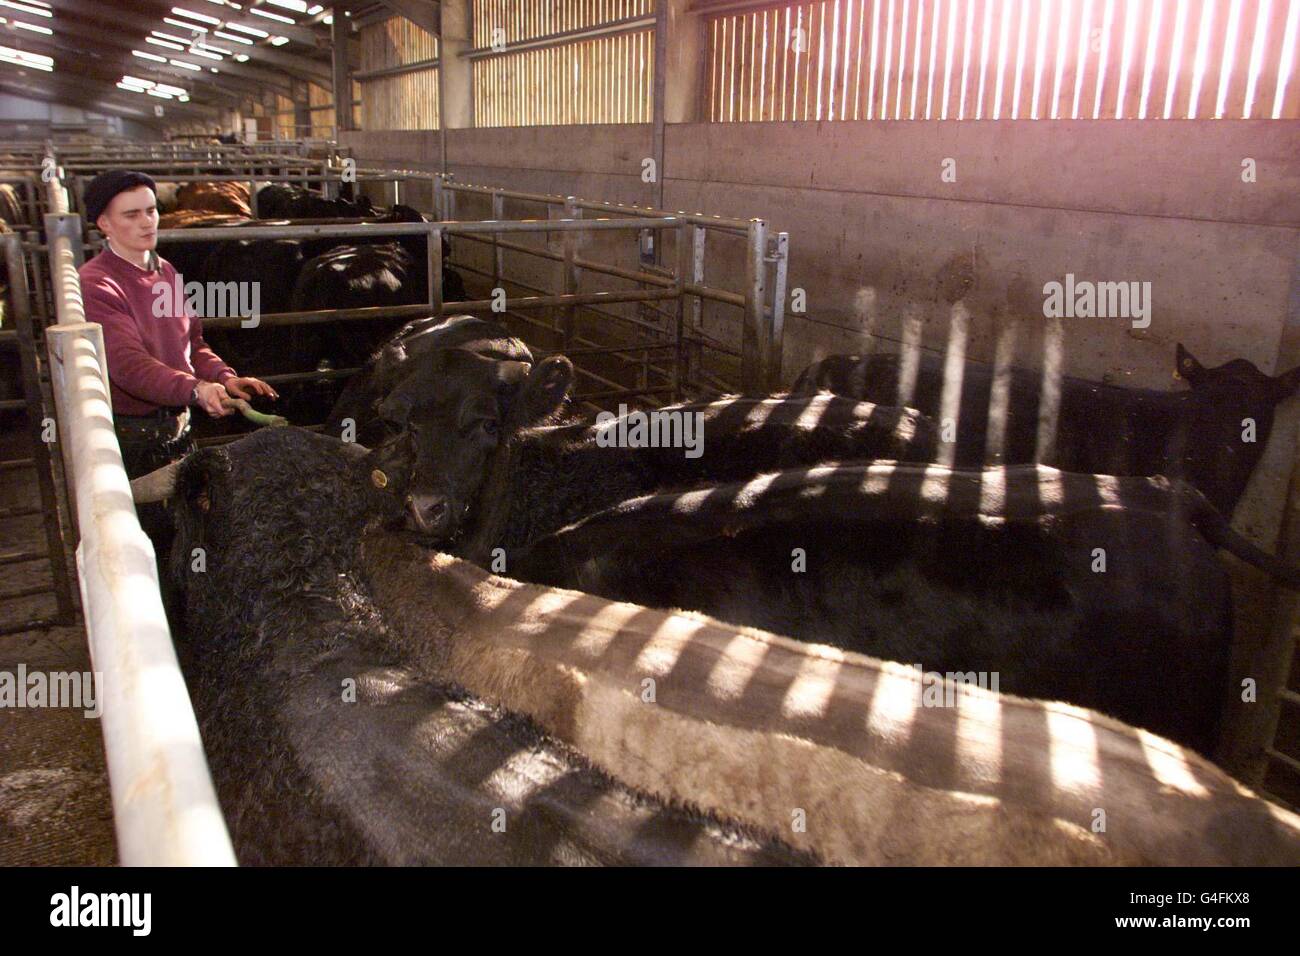 Un éleveur de bovins non identifié sur le marché du bétail de Hexham ce mardi 24 novembre 1998, suite à la décision prise hier par les gouvernements de l'UE de lever l'interdiction sur les exportations britanniques de boeuf. Photo d'Owen Humphreys/PA. Voir PA Story POLITICS Beef Banque D'Images